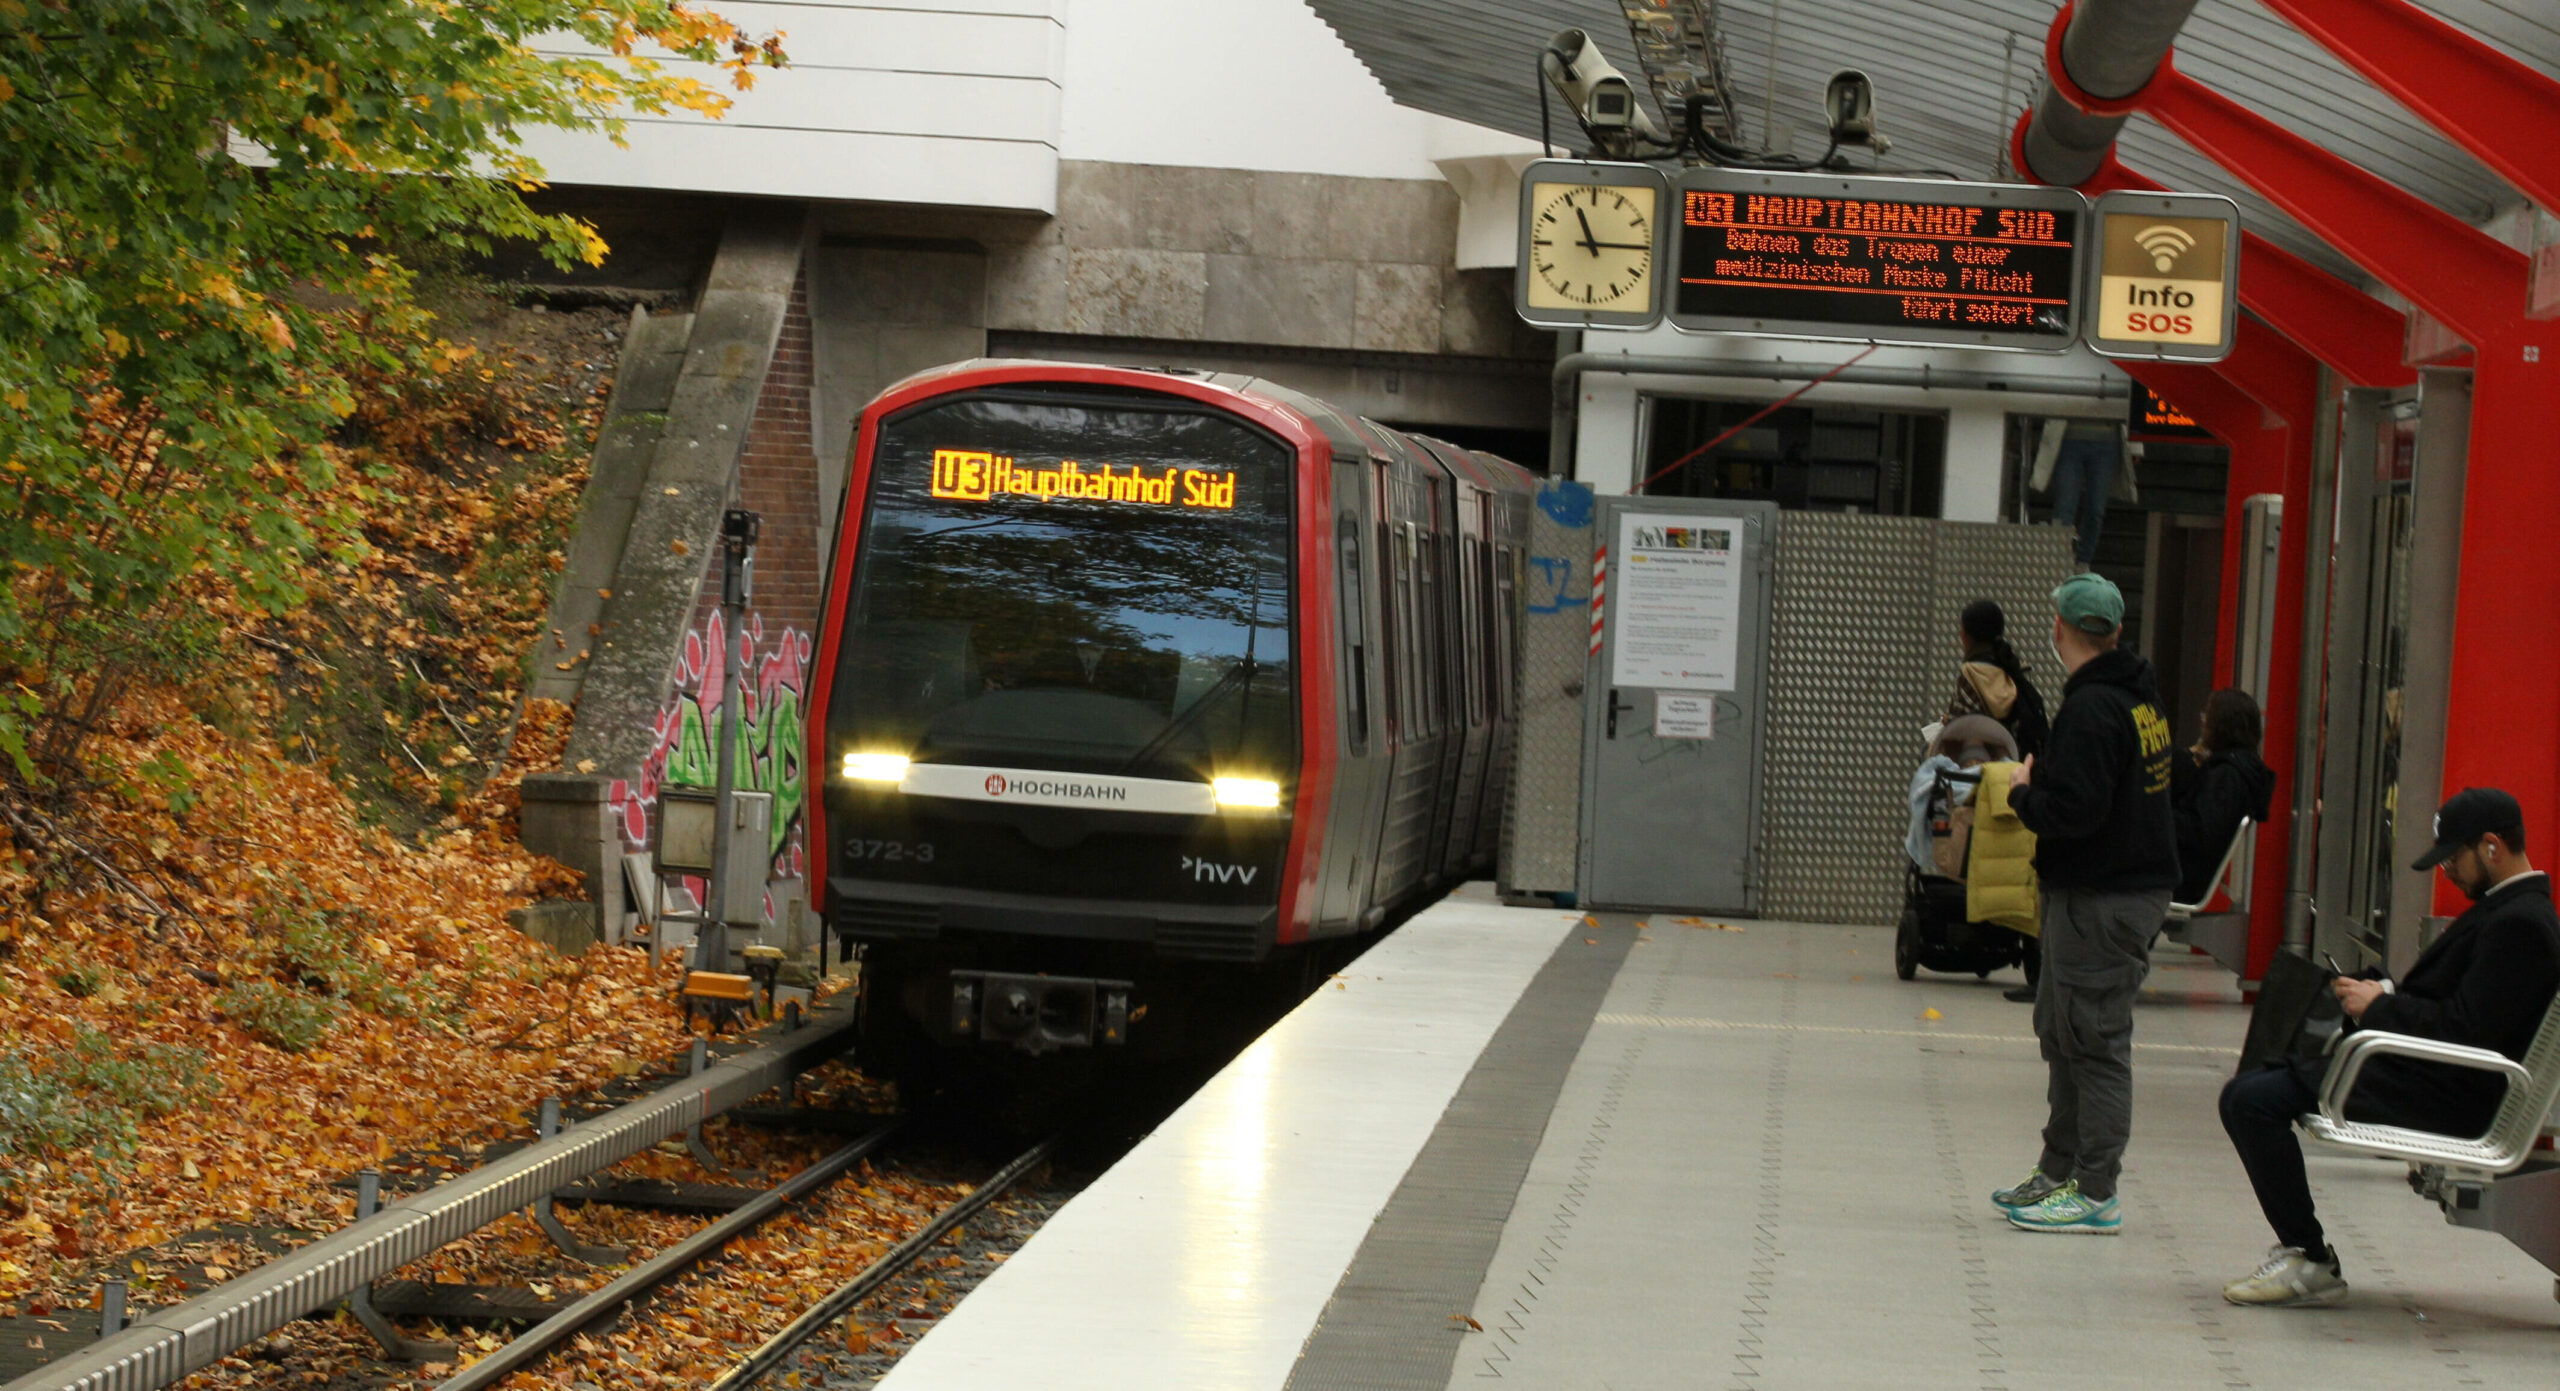 Eine Bahn der Linie U3 hält am Bahnhof Borgweg. (Symbolbild)